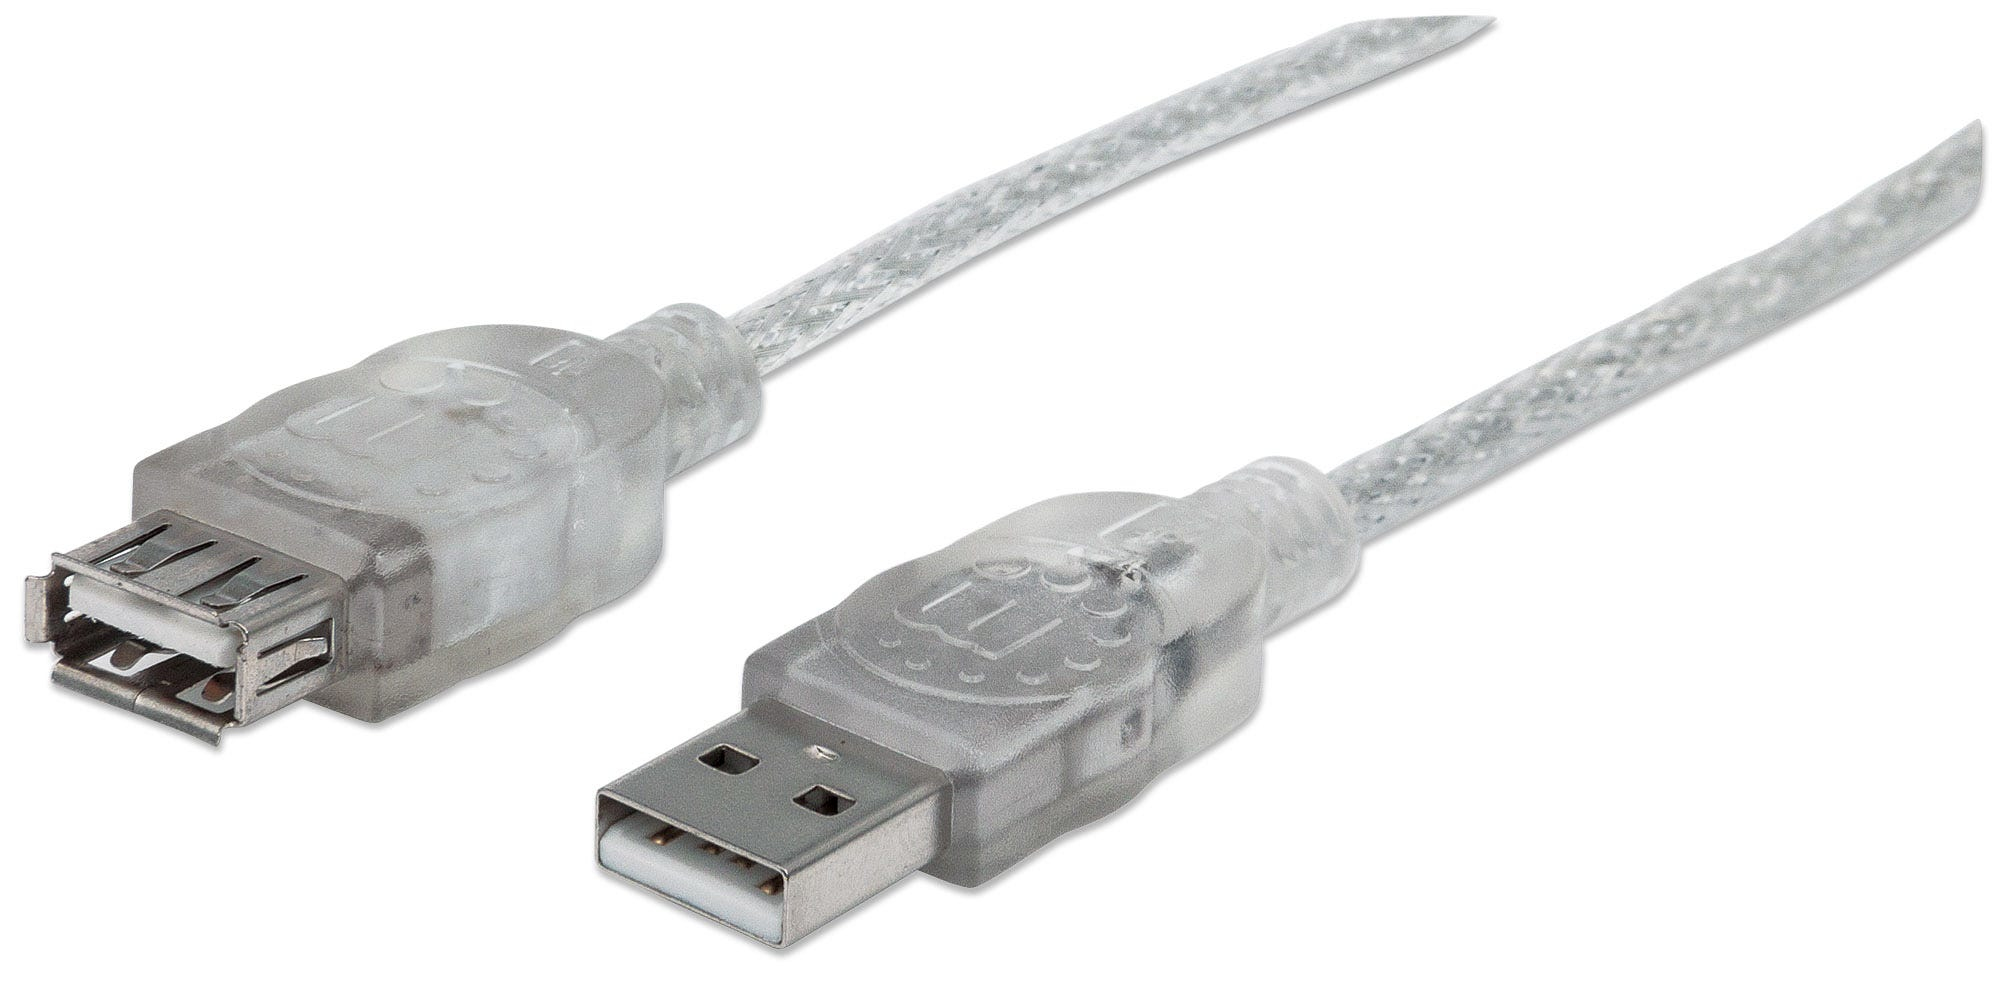 Cable Manhattan Usb V2.0 Ext. 3.0M Plata 340496